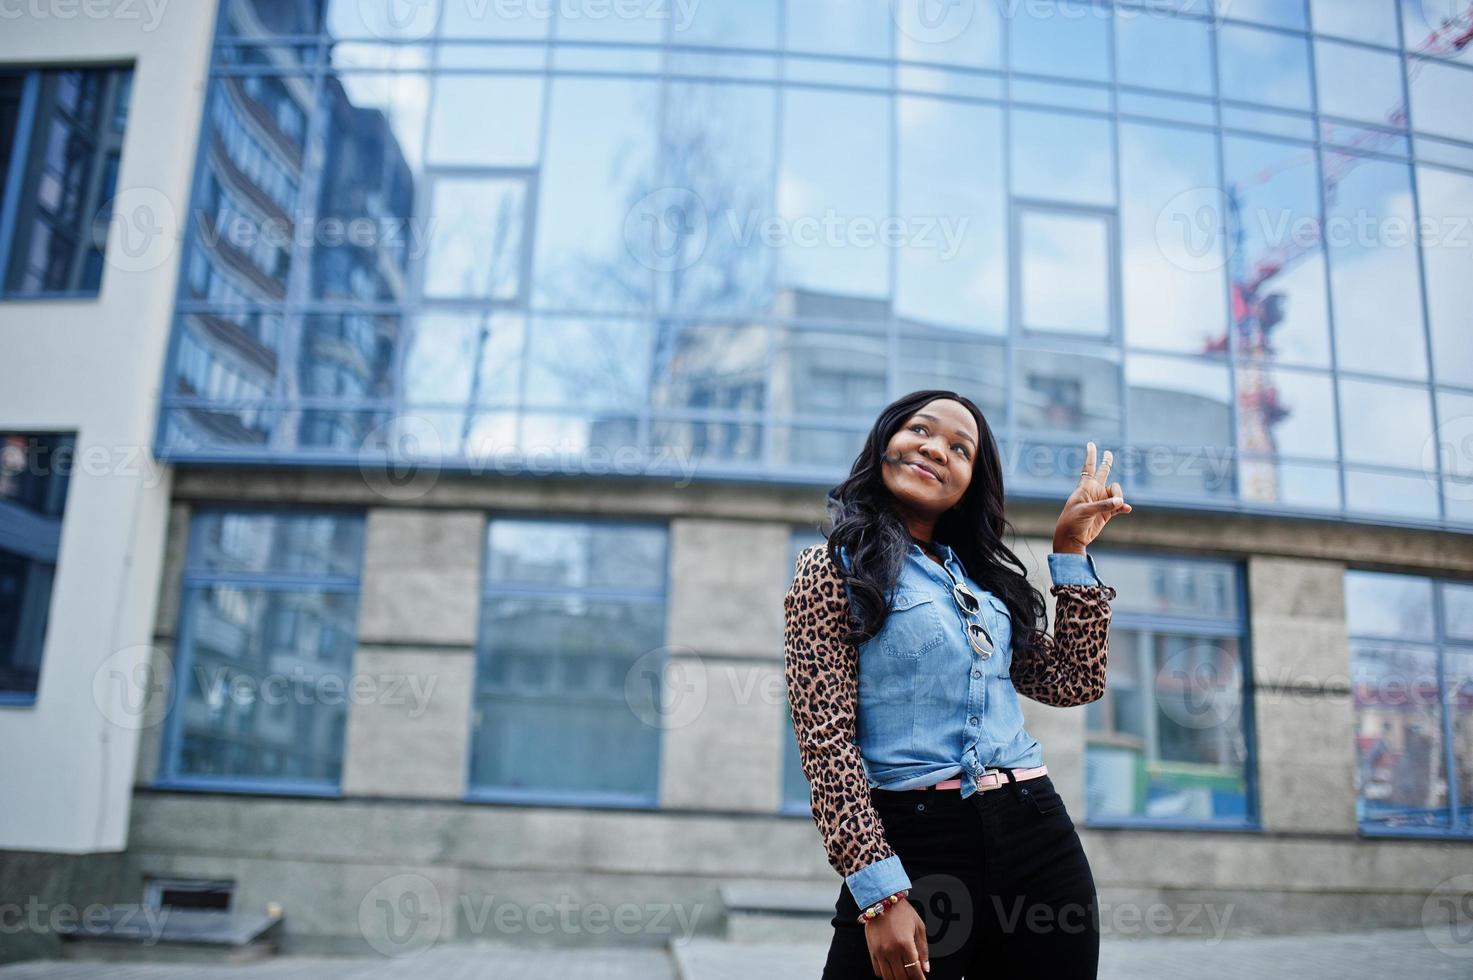 chica afroamericana hipster con camisa de jeans con mangas de leopardo posando en la calle contra un edificio de oficinas moderno con ventanas azules. foto